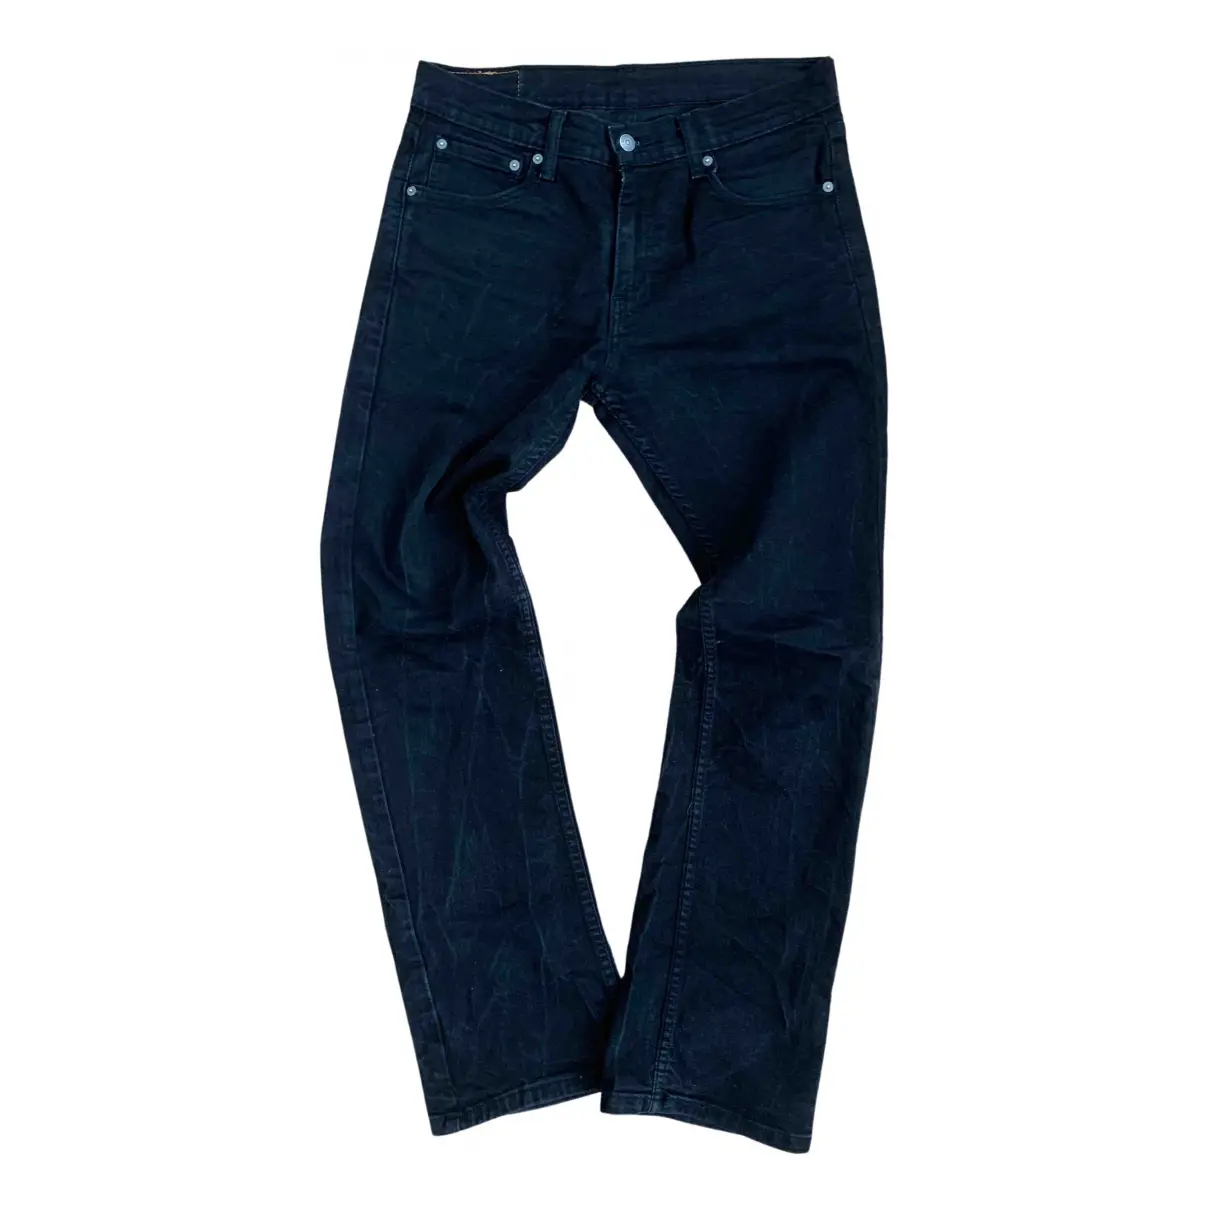 Black Cotton Jeans 527 Levi's